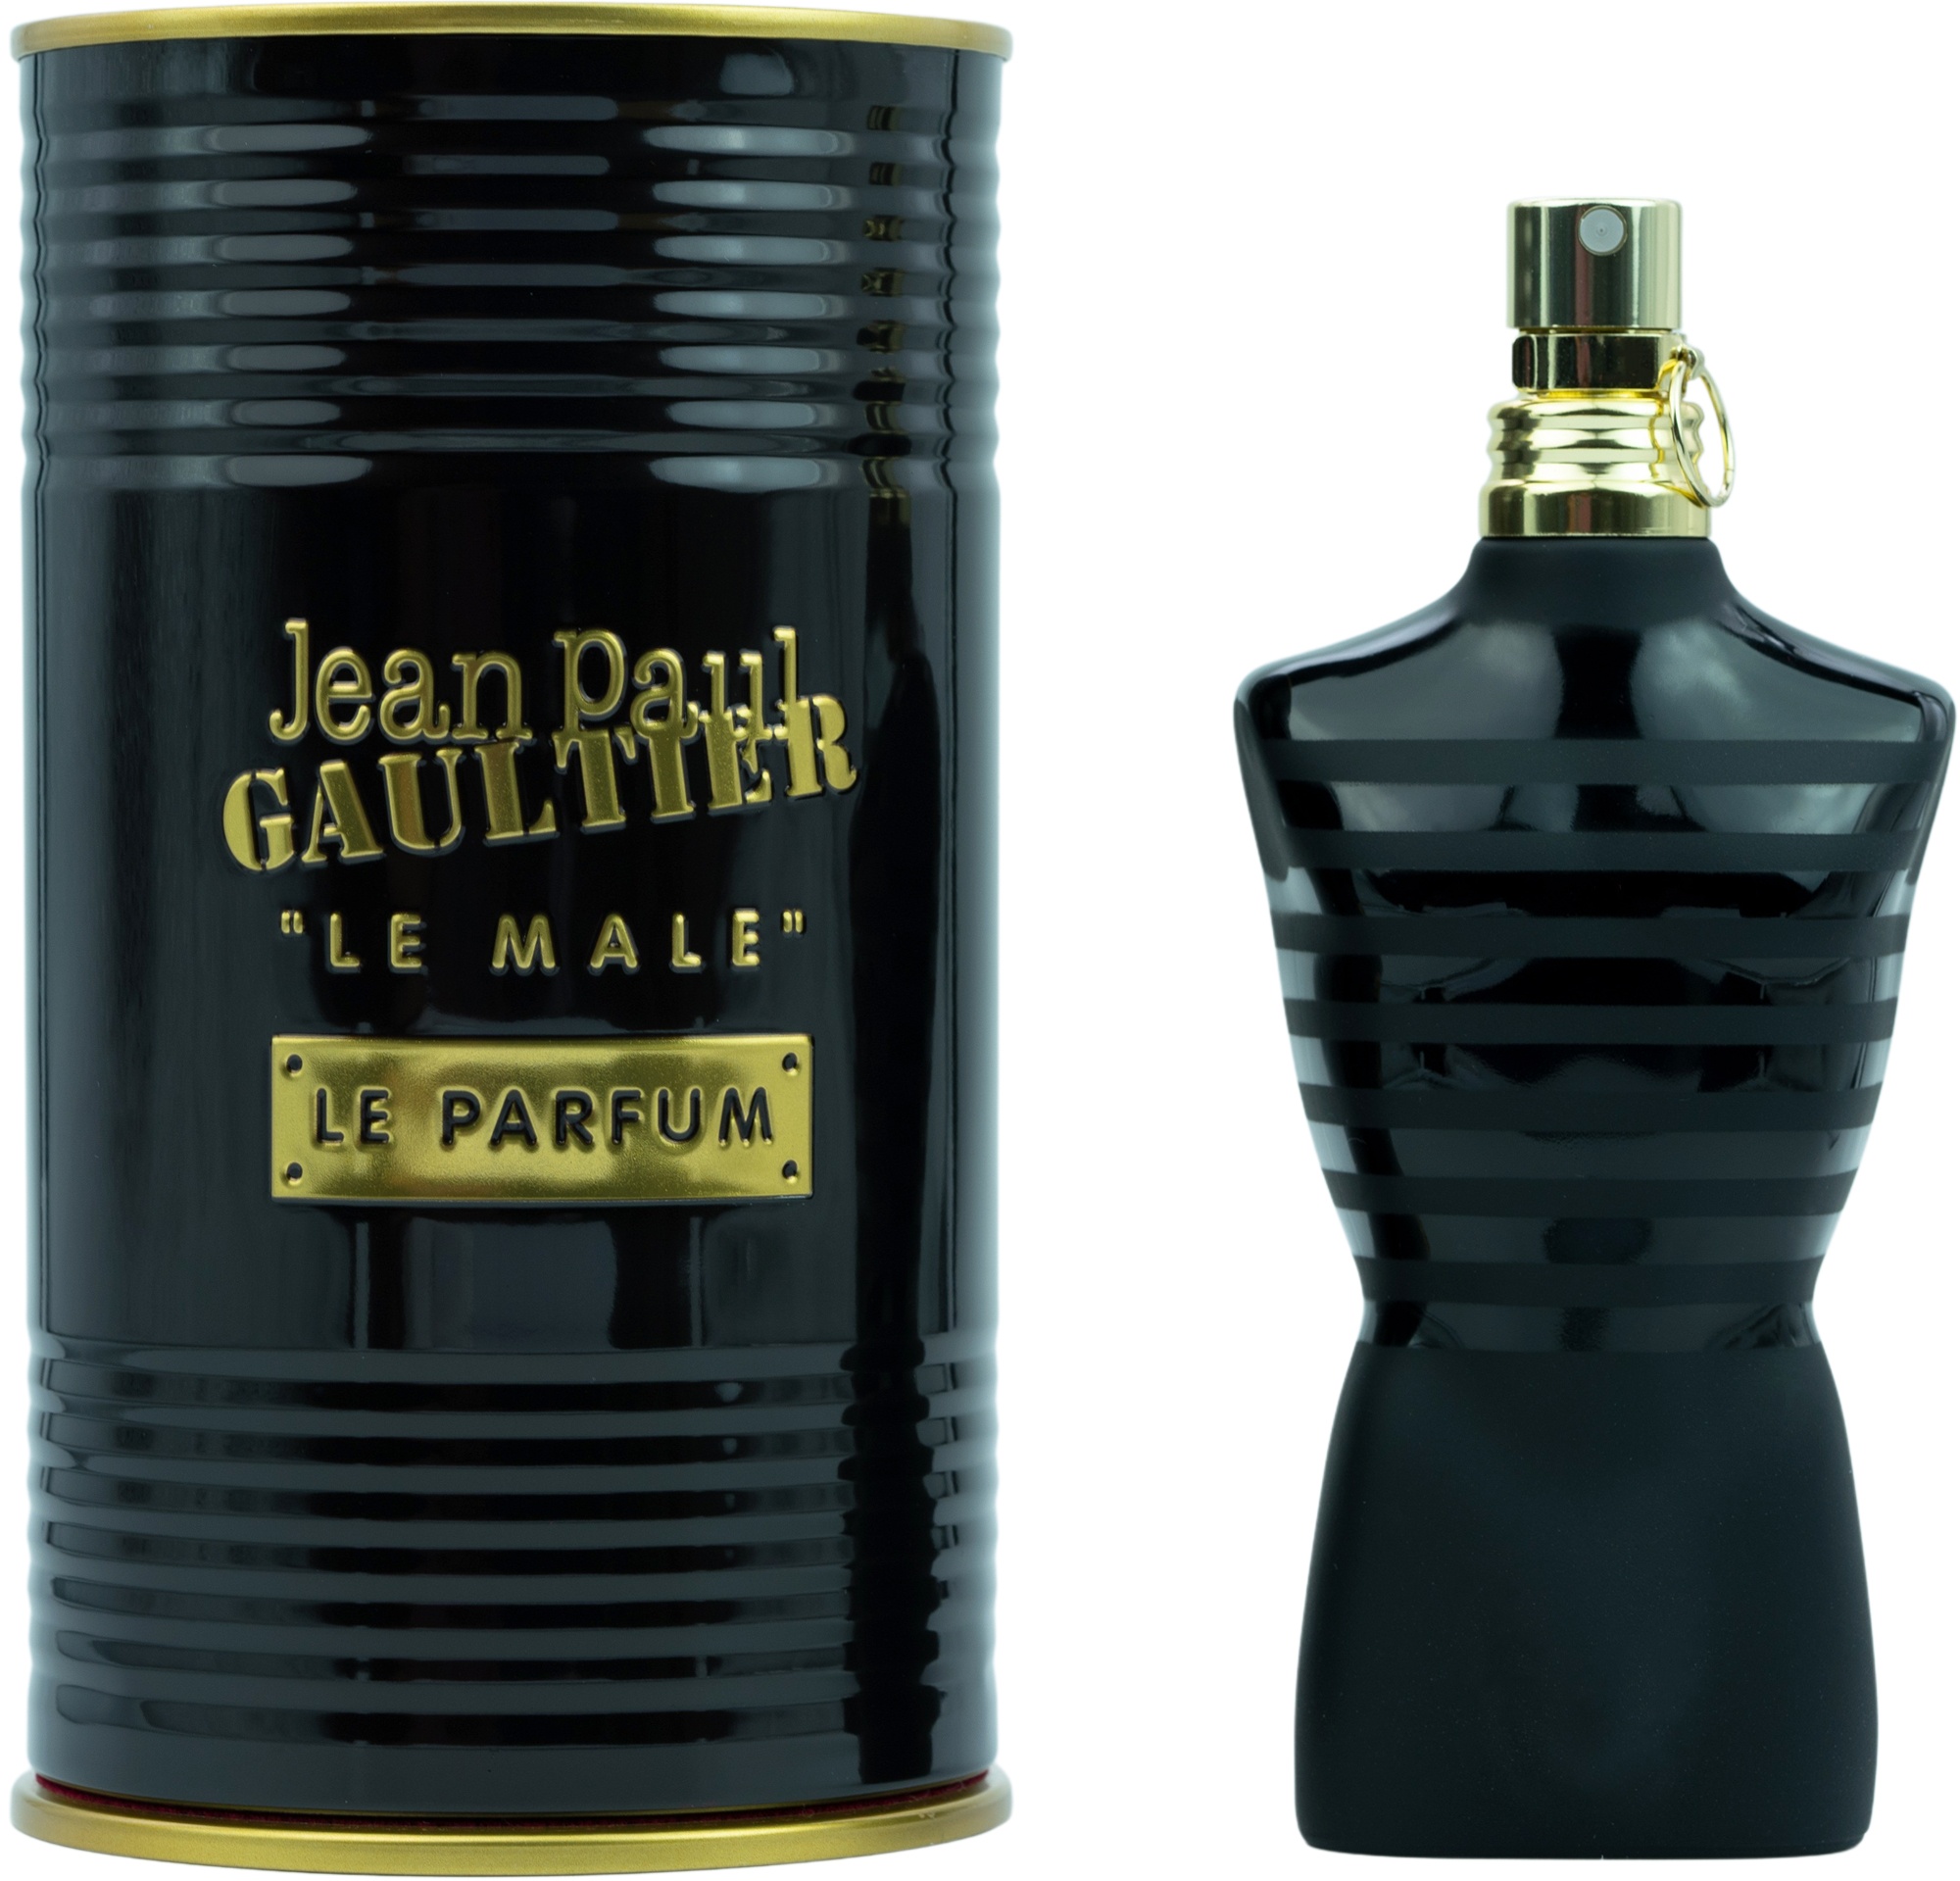 Bild von Le Male Le Parfum Eau de Parfum 75 ml